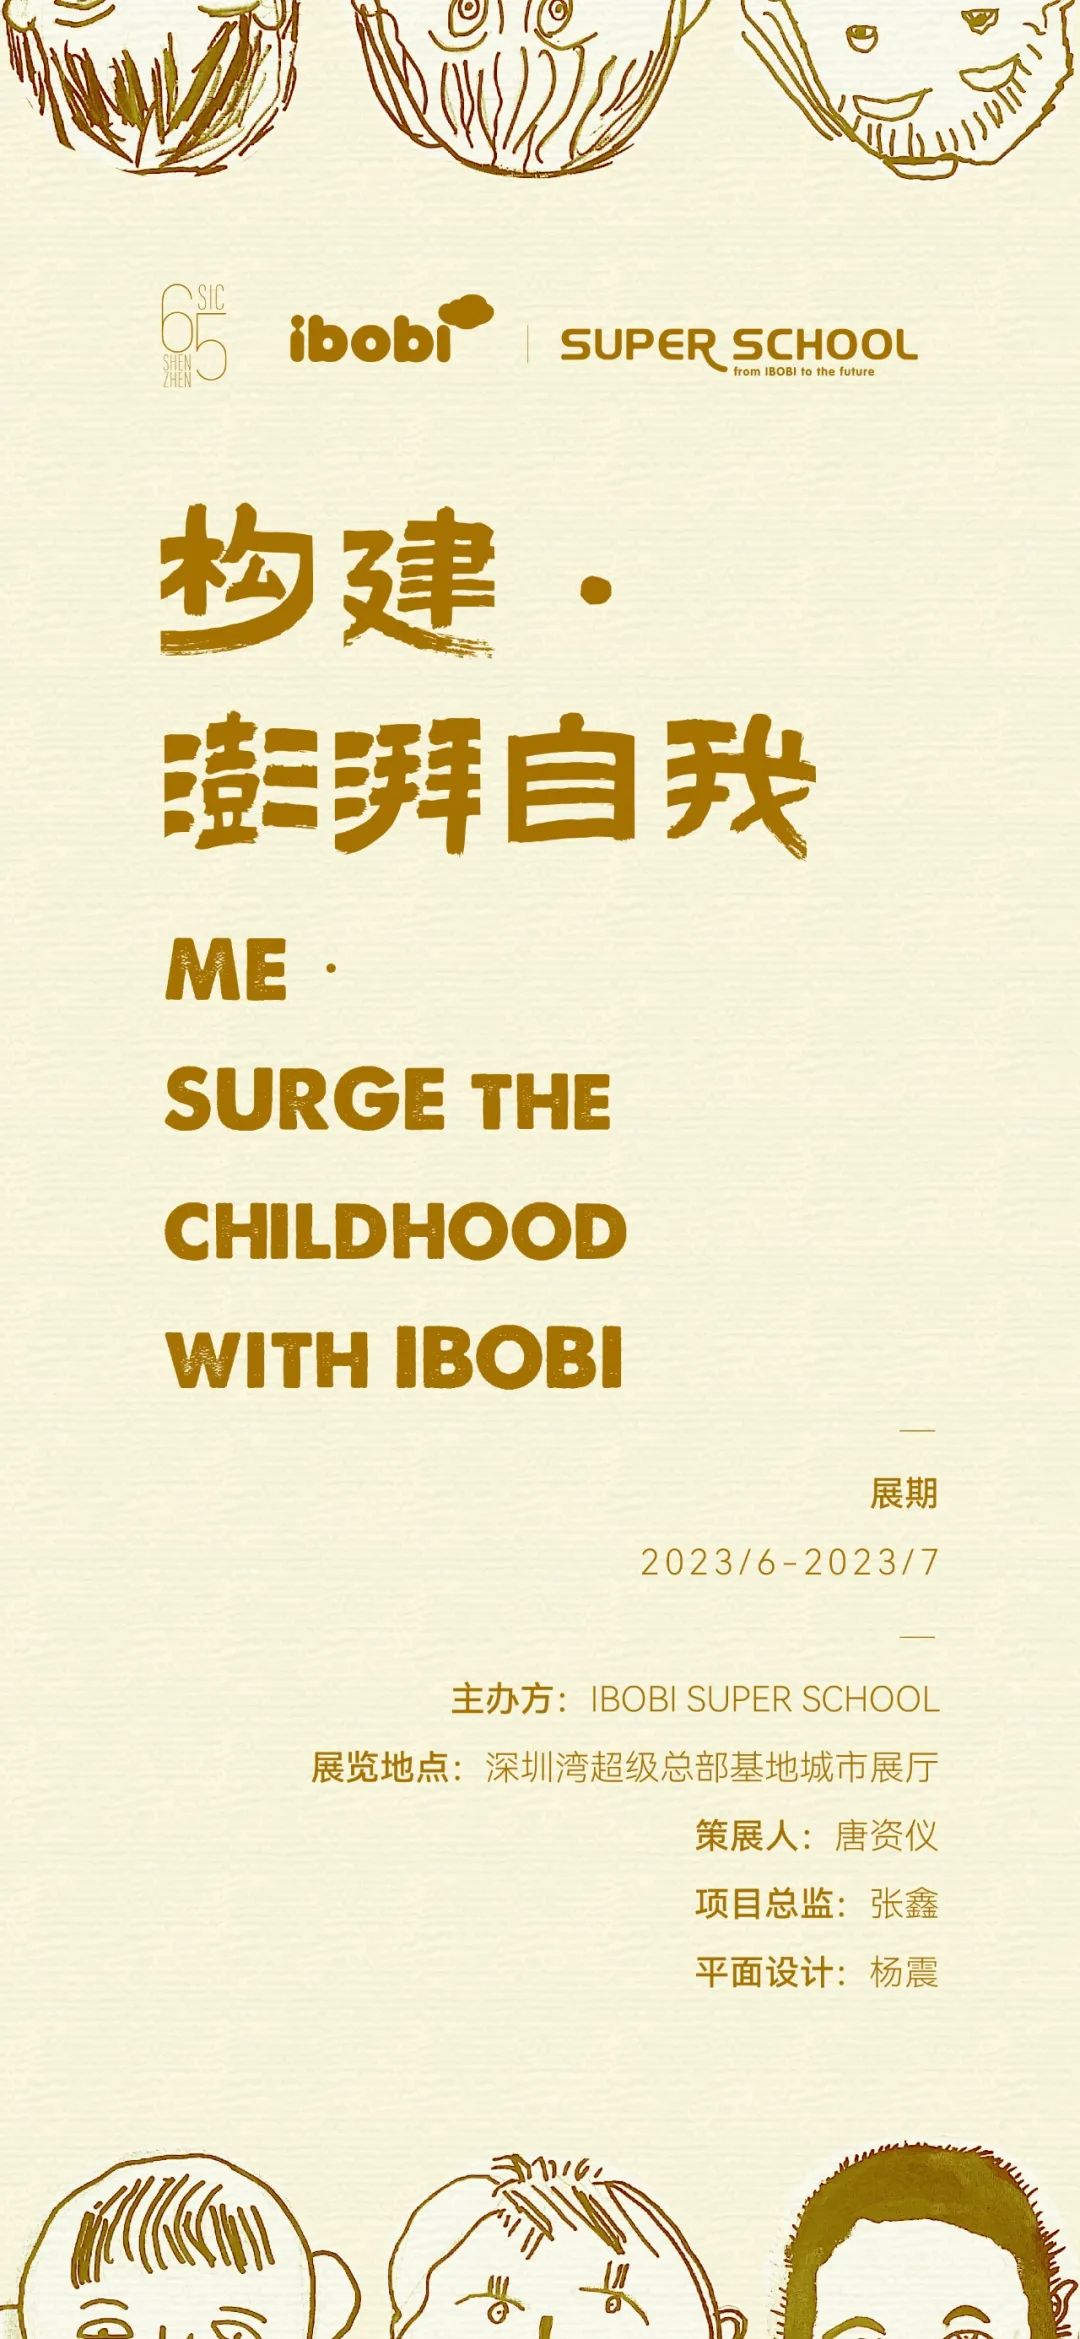 构建 • 澎湃自我 | IBOBI SUPER SCHOOL儿童作品展启幕